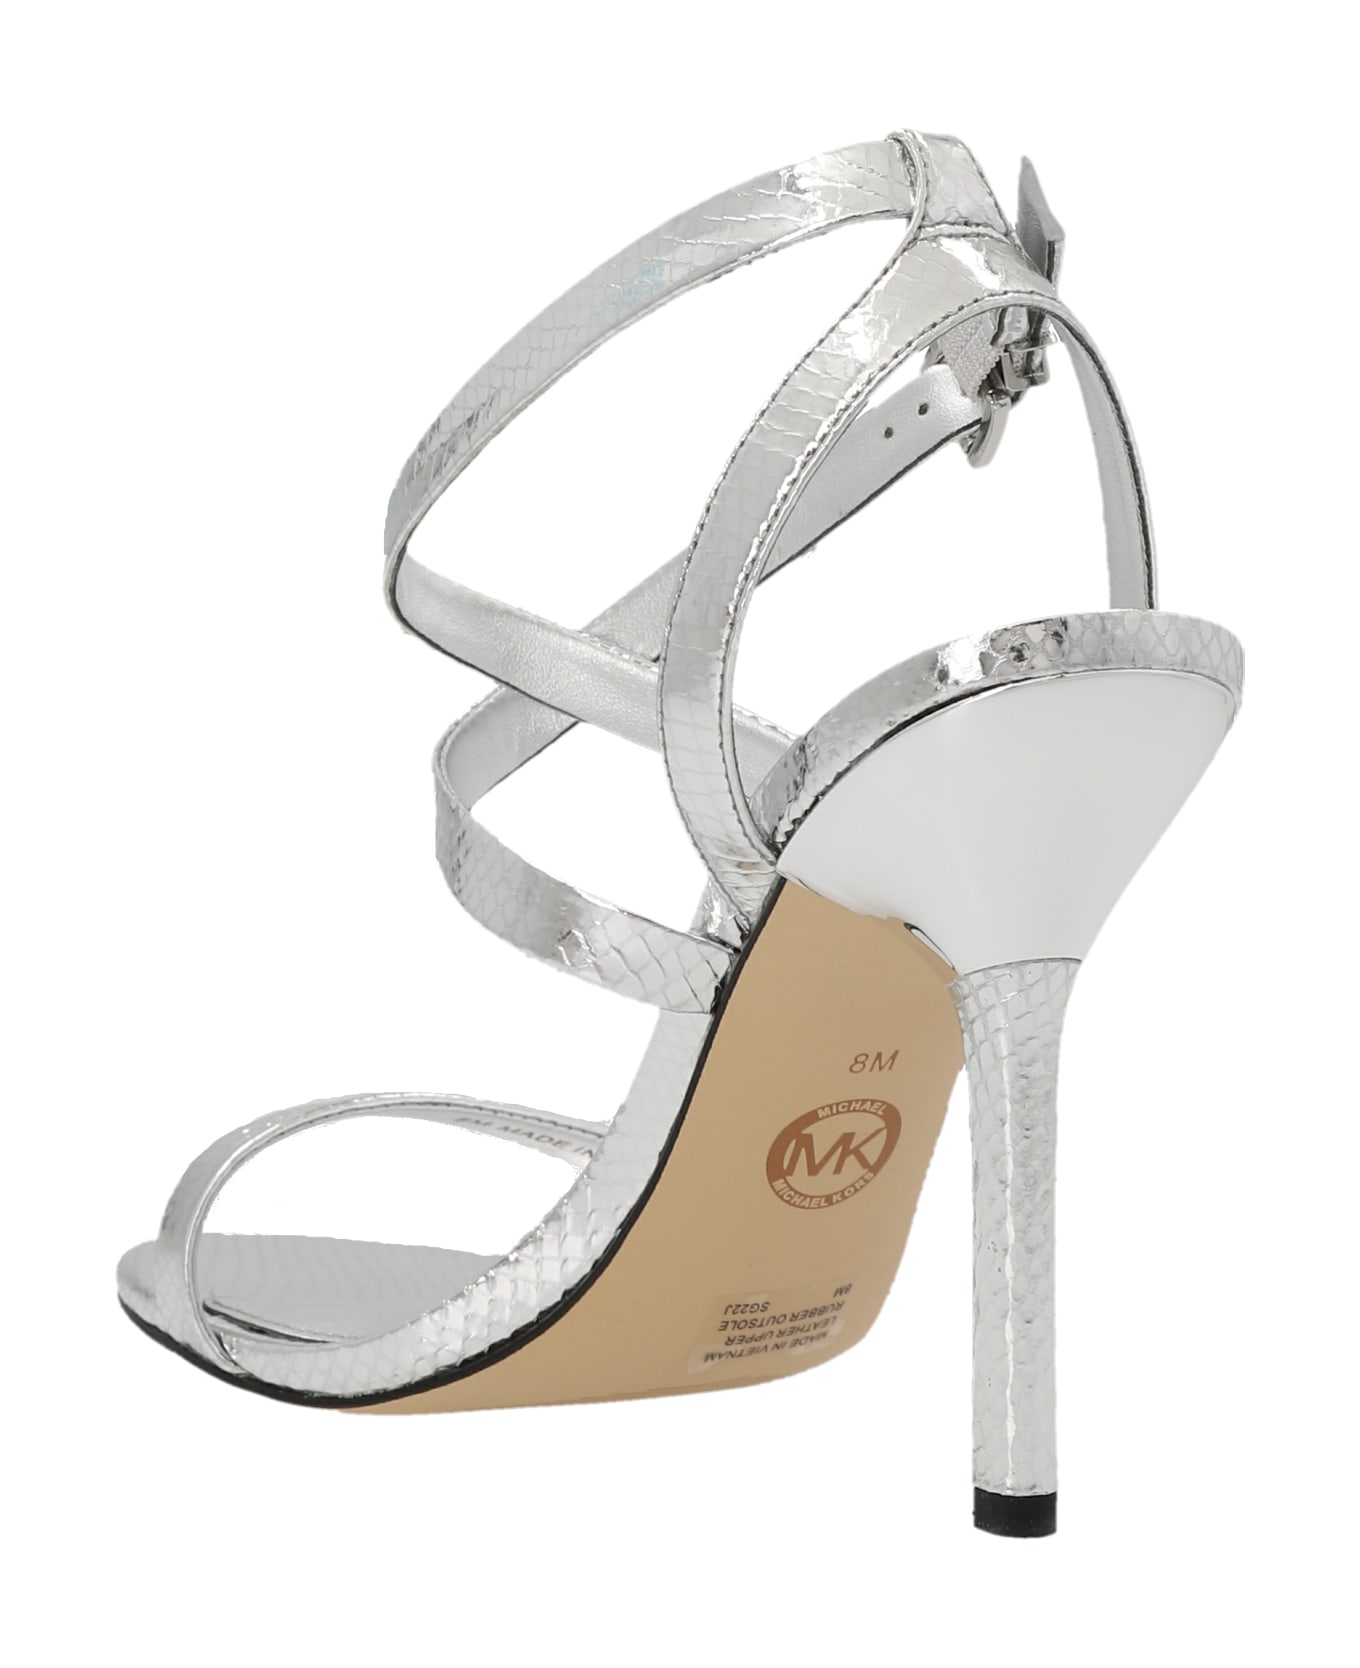 Michael Kors 'asha' Sandals - Silver